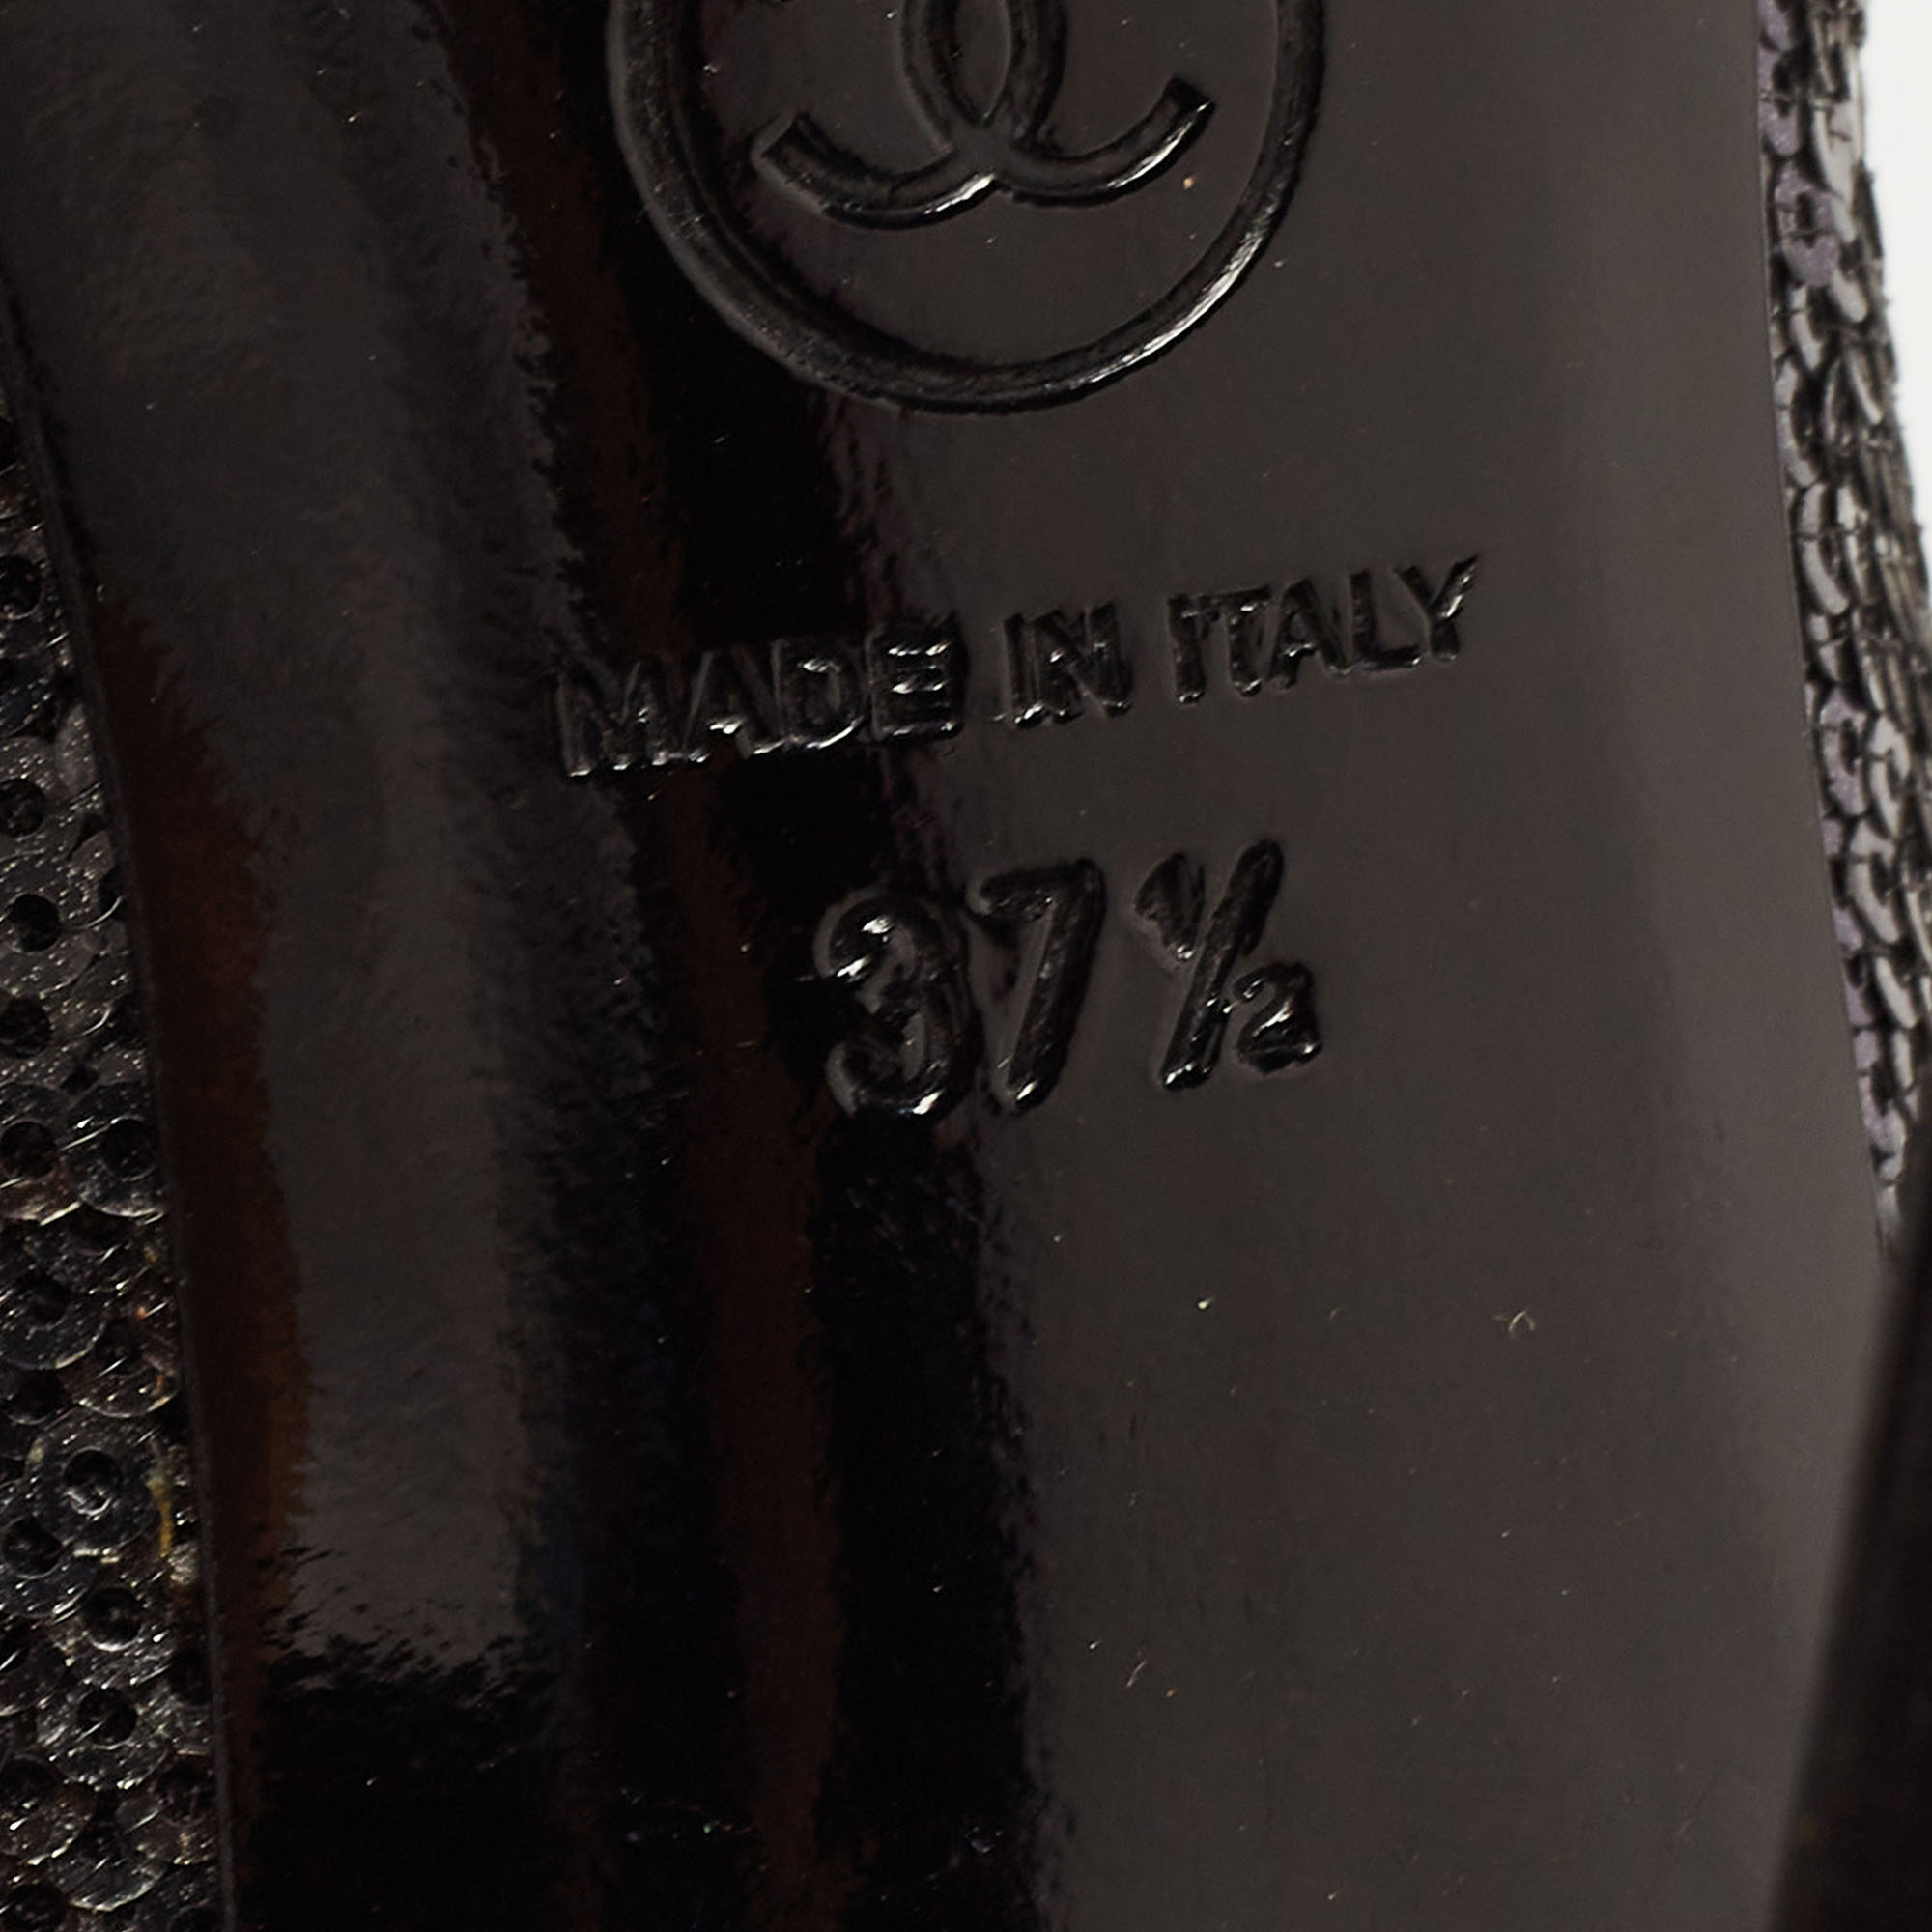 Chanel Black Sequins CC Pumps Size 37.5